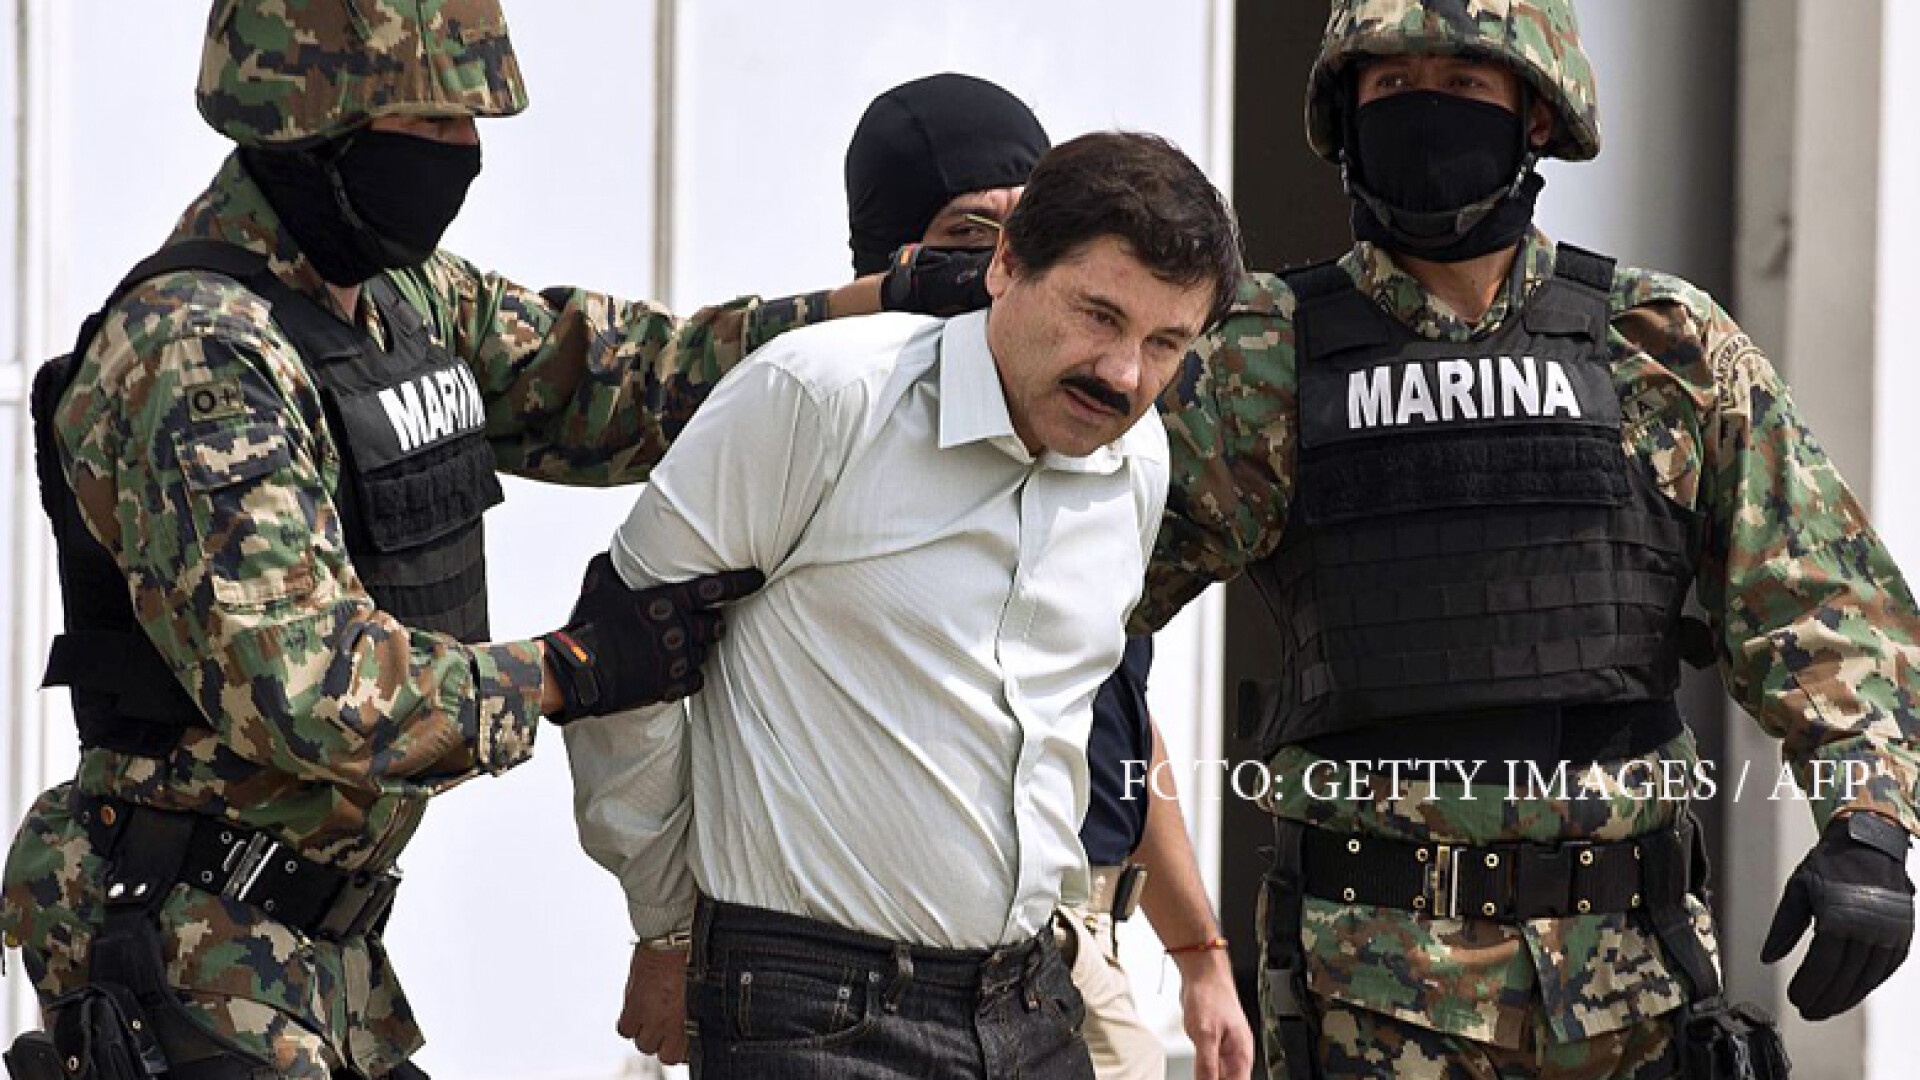 El Chapo, liderul cartelului SInaloa, escortat de puscasi marini